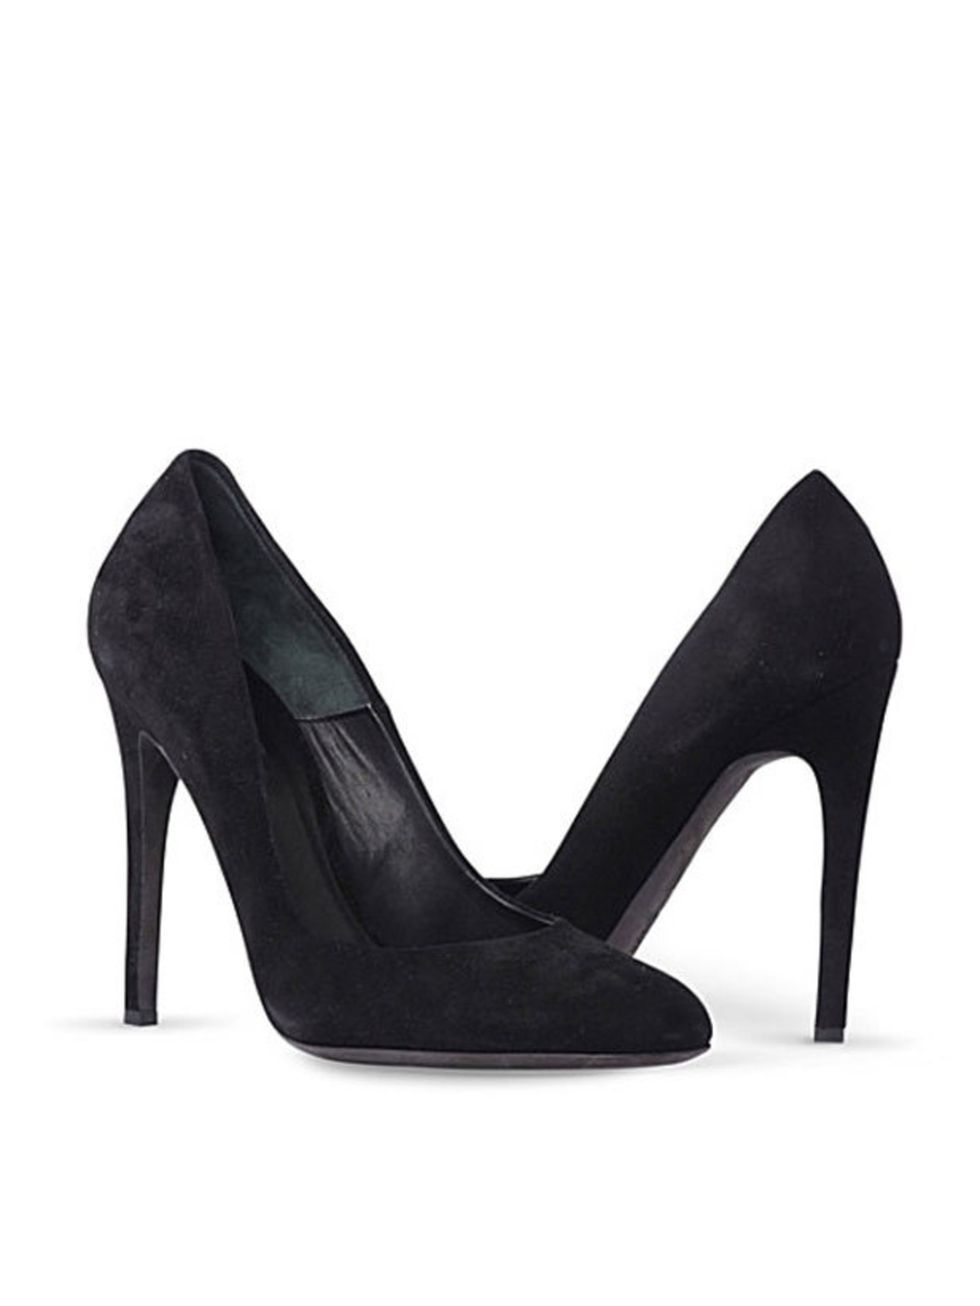 <p>Kurt Geiger 'Eden' stiletto heels, £150, at <a href="http://www.selfridges.com/en/Womenswear/Categories/Shoes-boots/High-heels/Eden-classic-stilettos_923-10004-1874500109/">Selfridges</a></p>